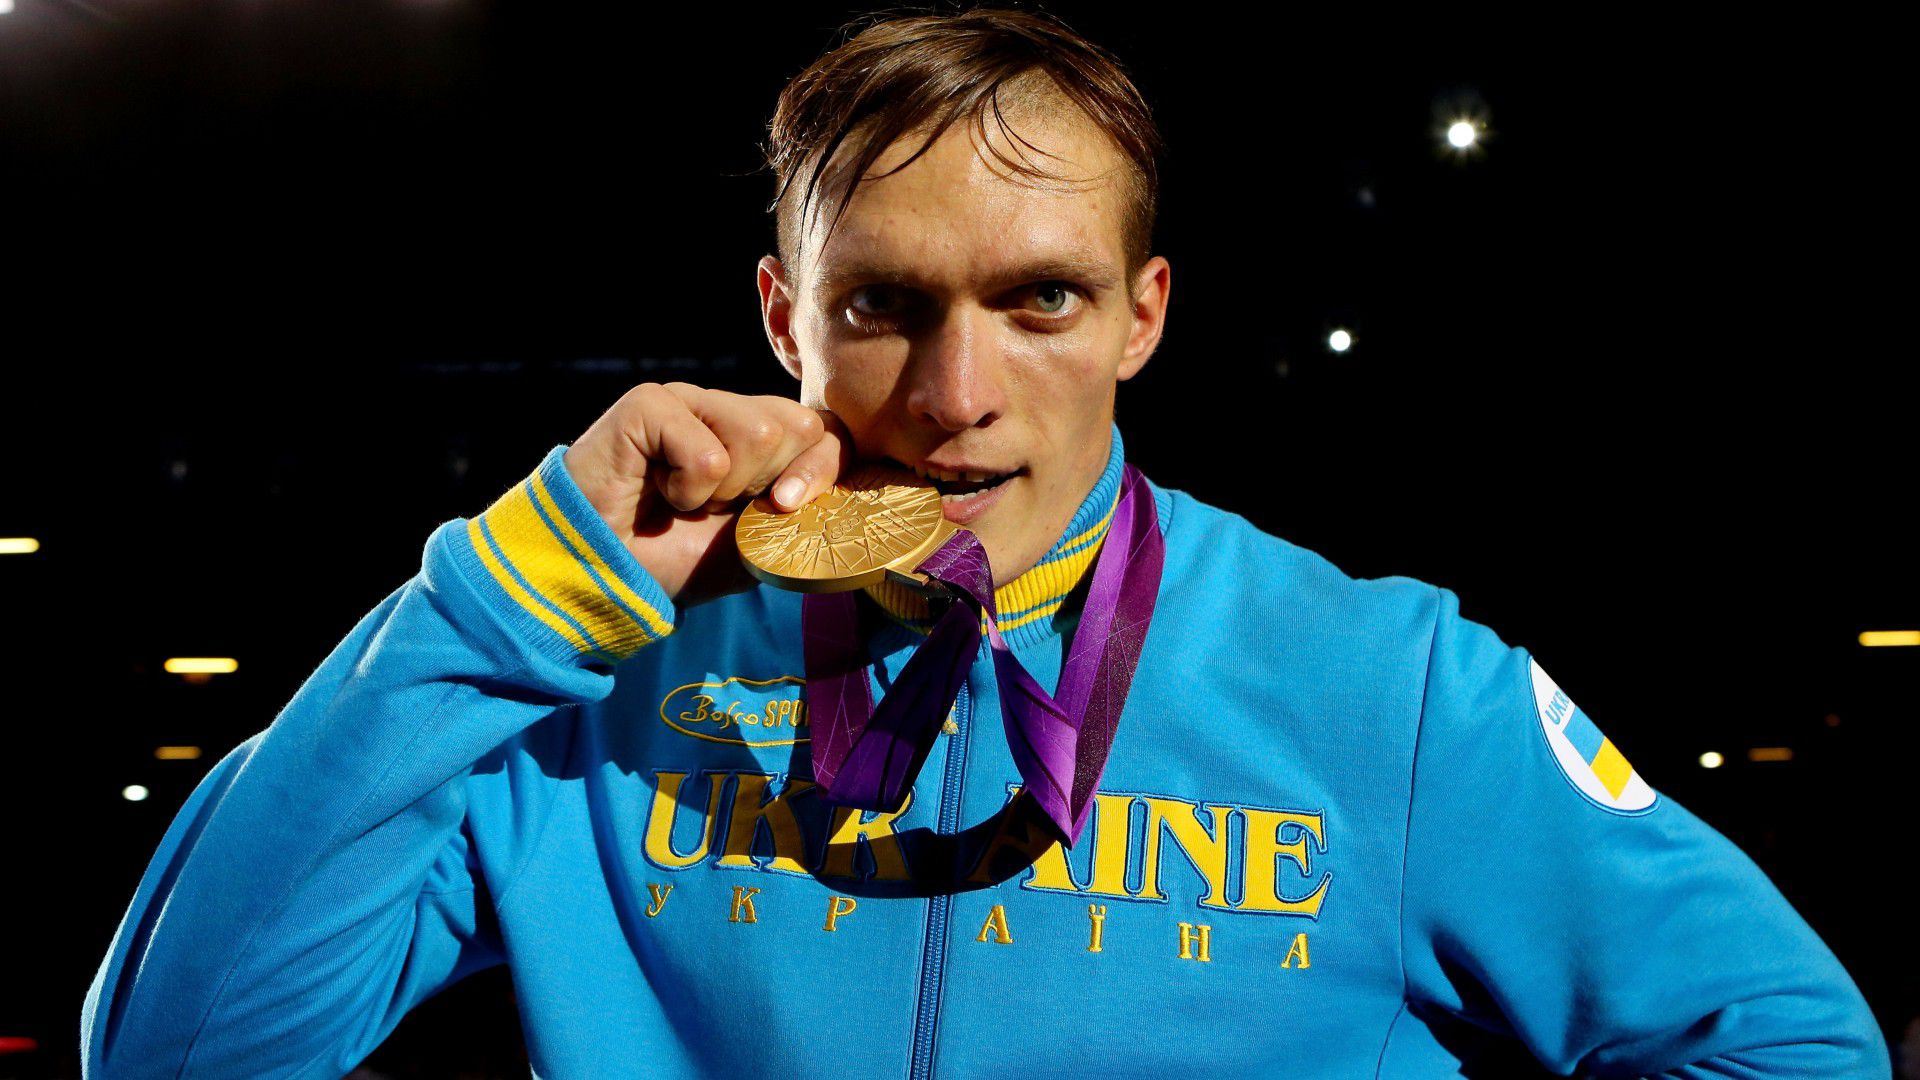 Halott apja kezébe adta olimpiai aranyérmét Uszik